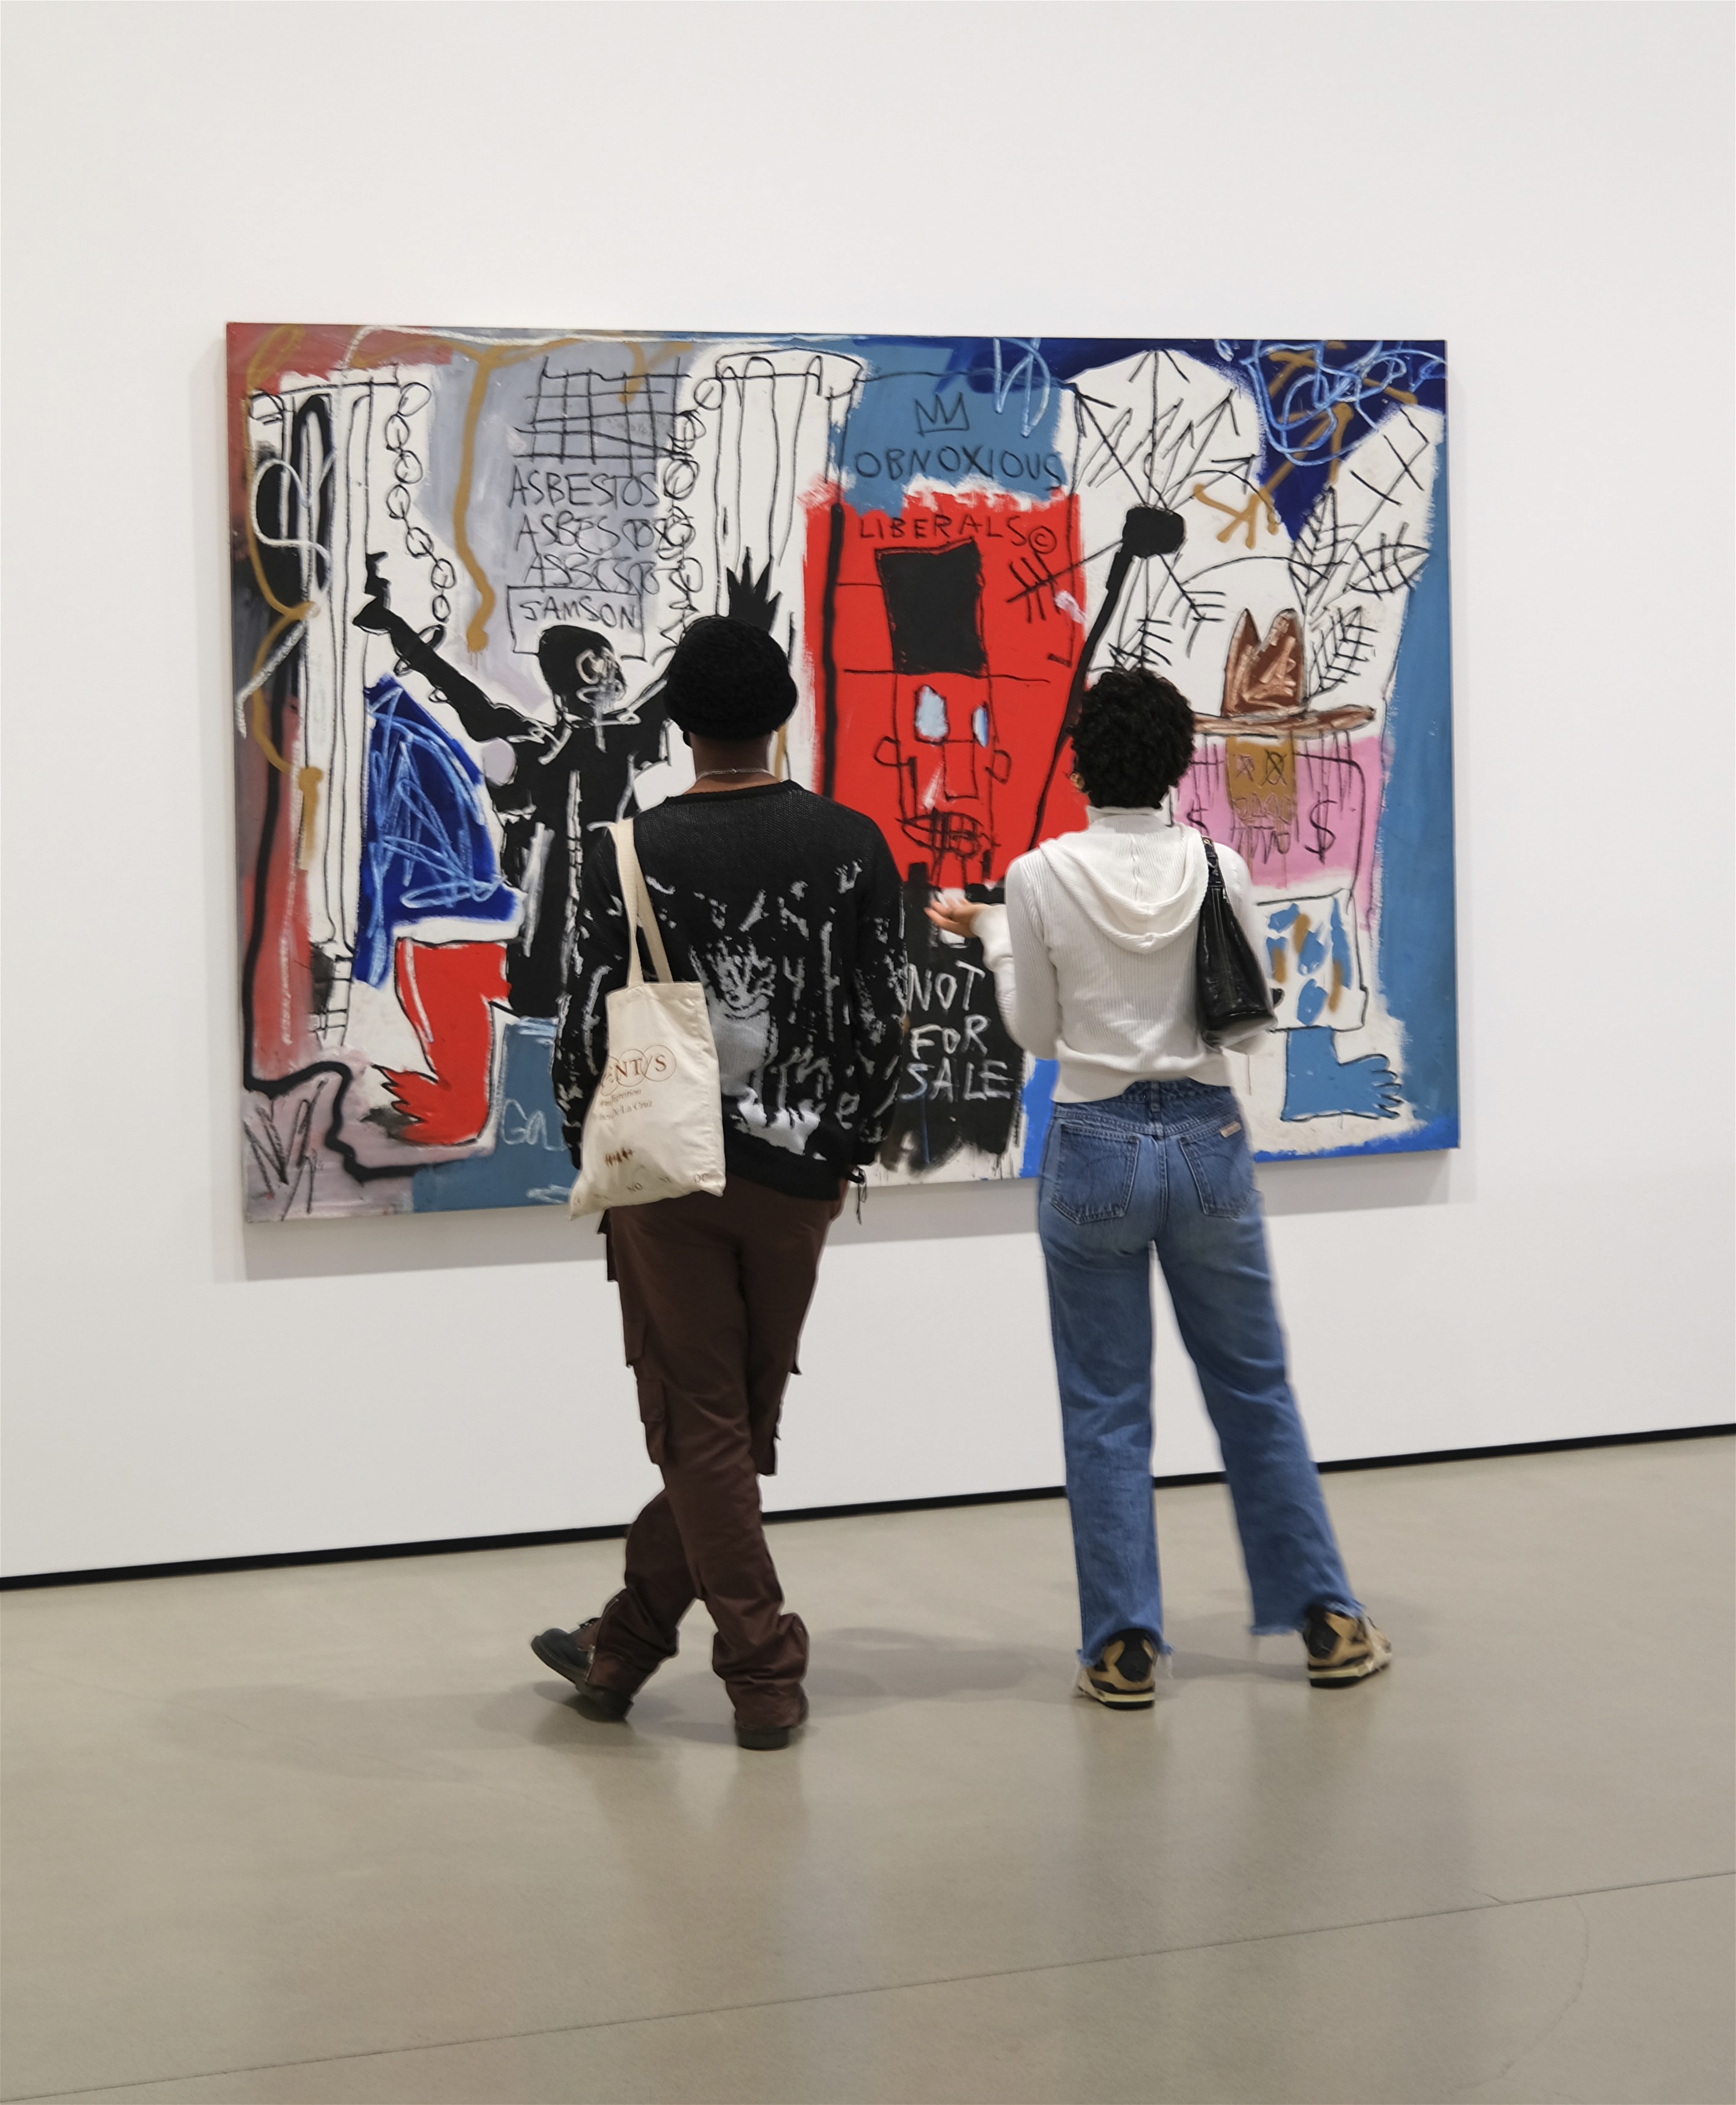 Zwei Personen bewundern ein Bild von Jean Michel Basquiat in einer Galerie